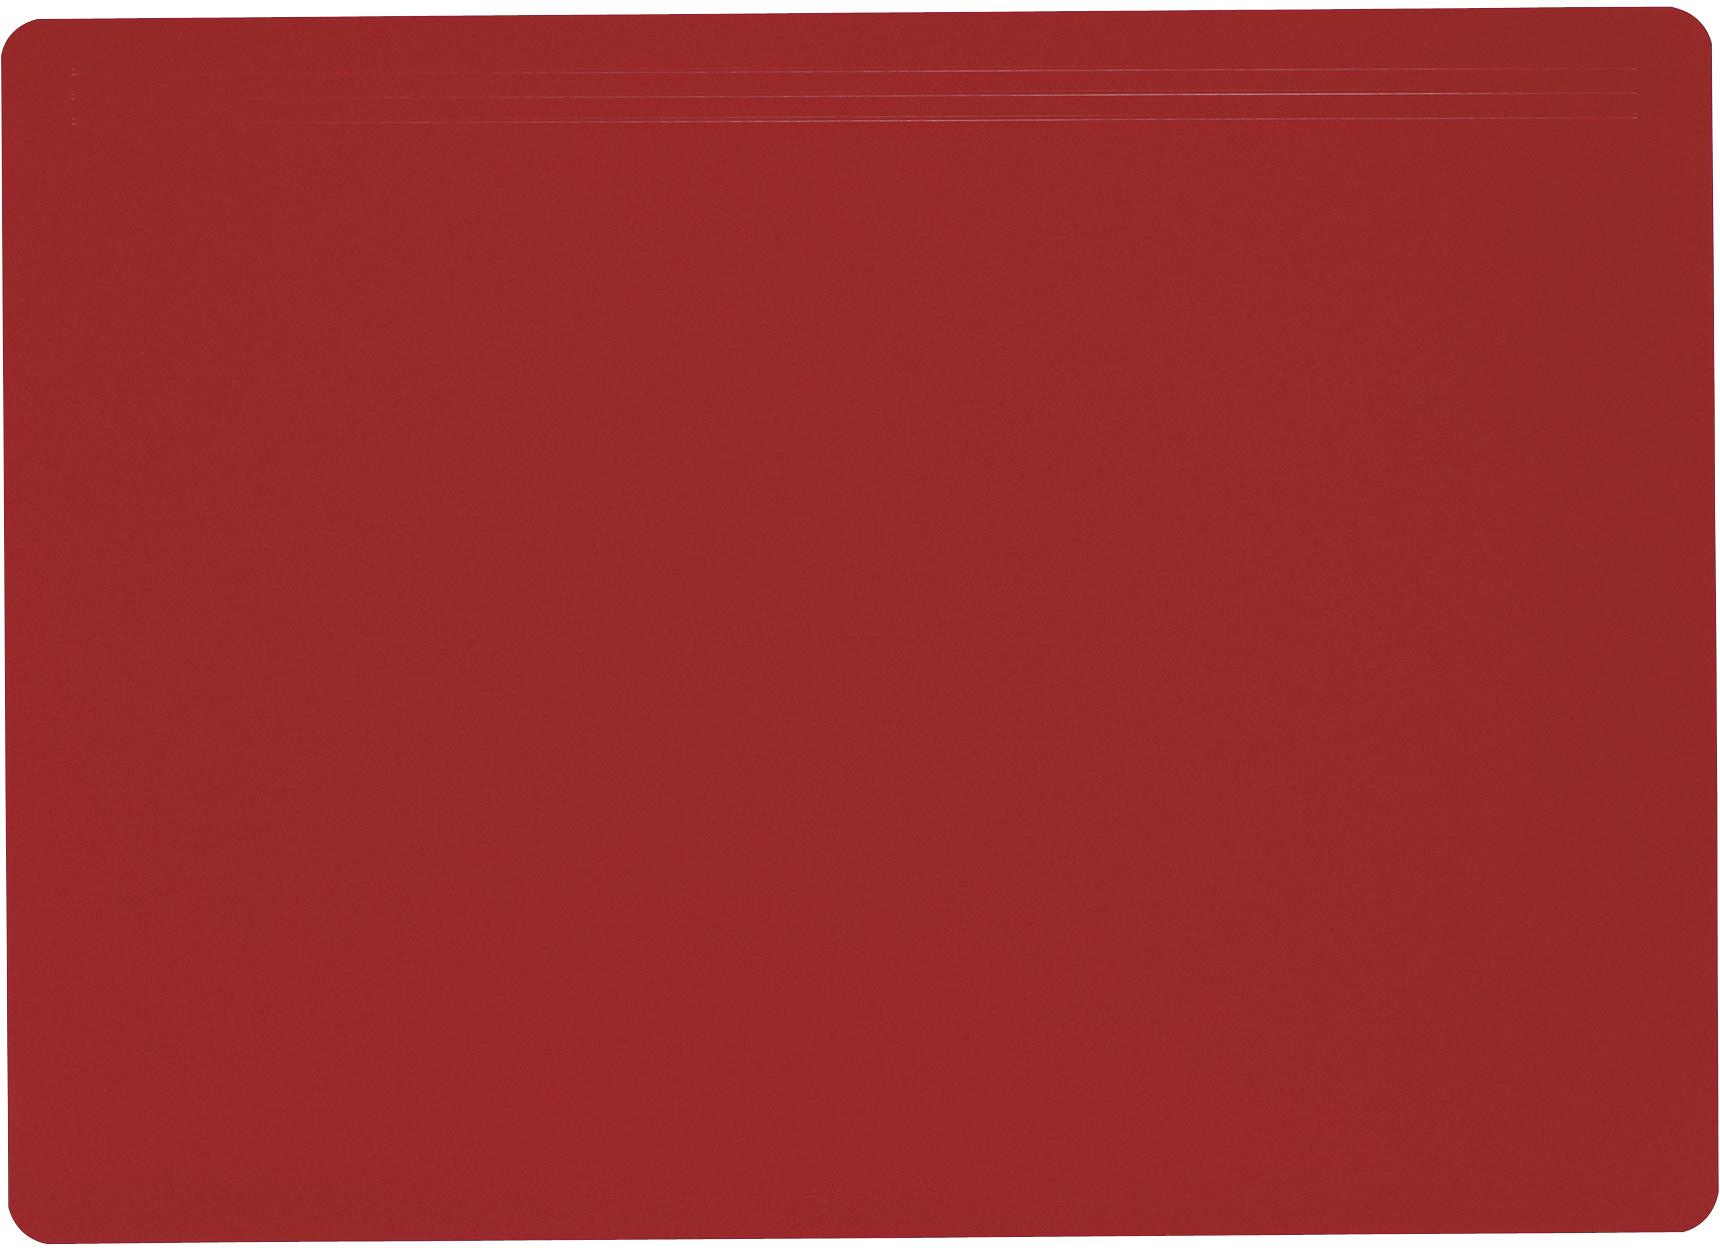 LÄUFER Sous-main Matton 32704 rouge 70x50cm